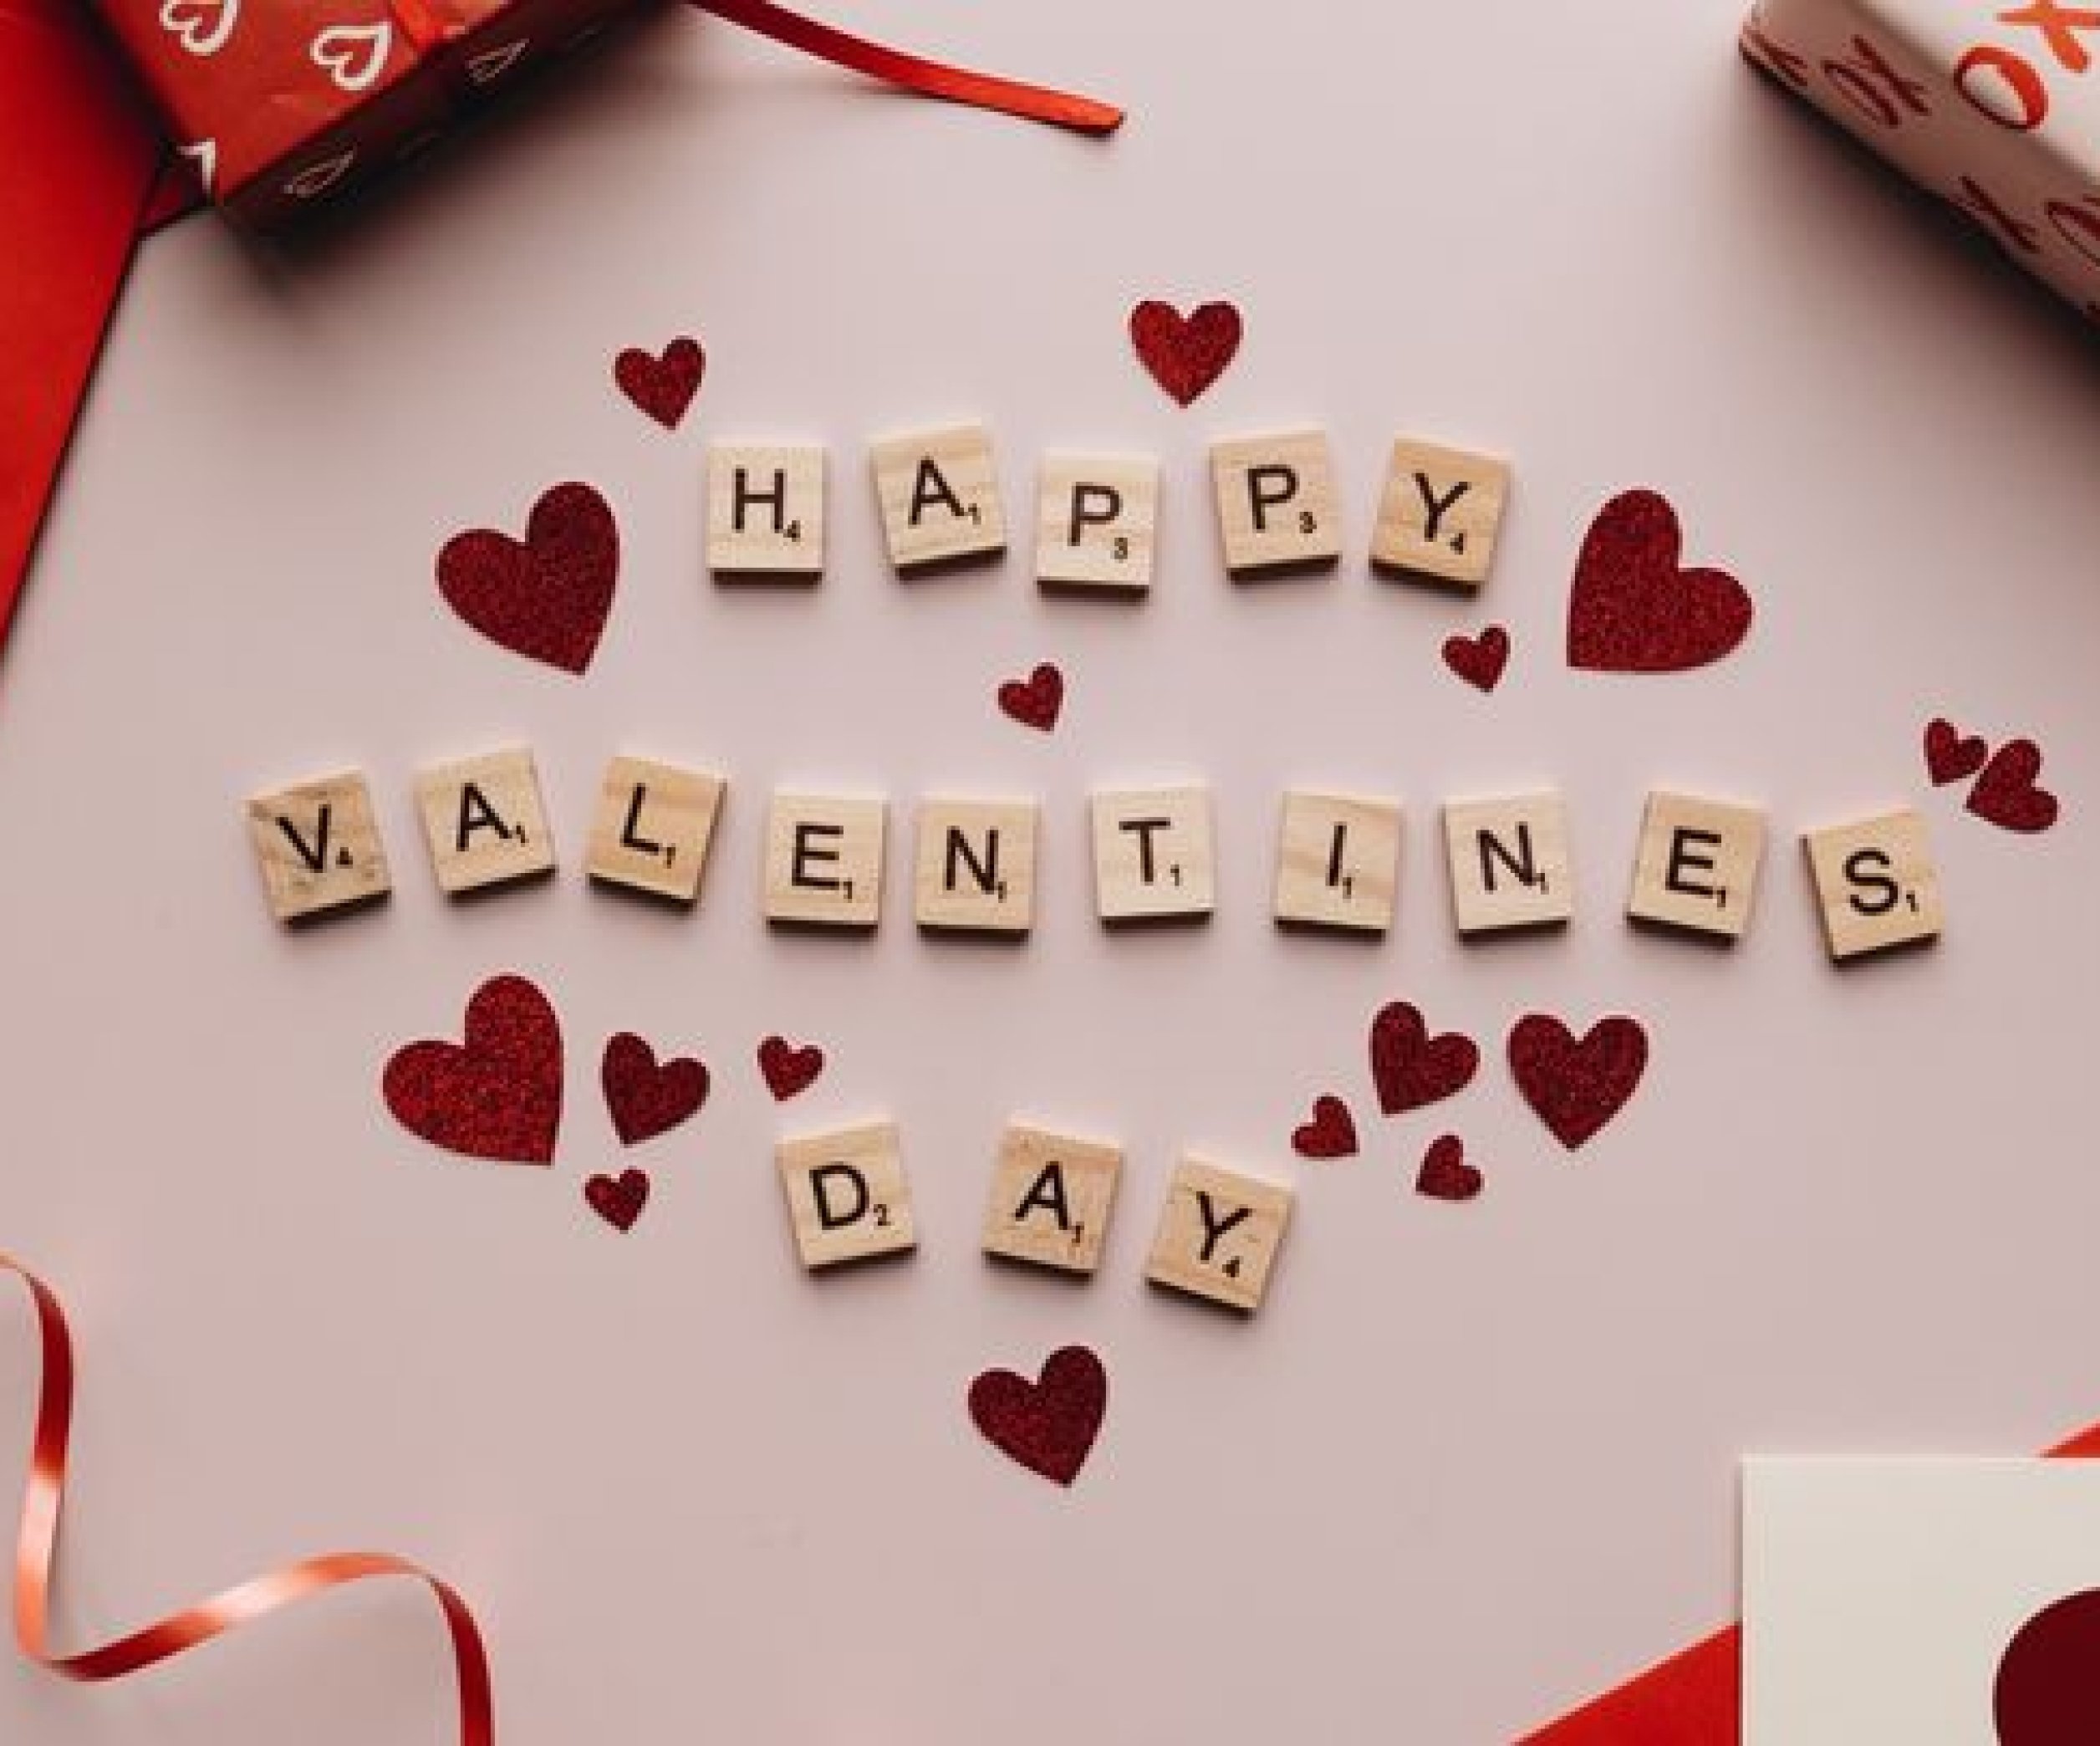 Мастер-классы и идеи для подарков на 14 февраля (День святого Валентина)